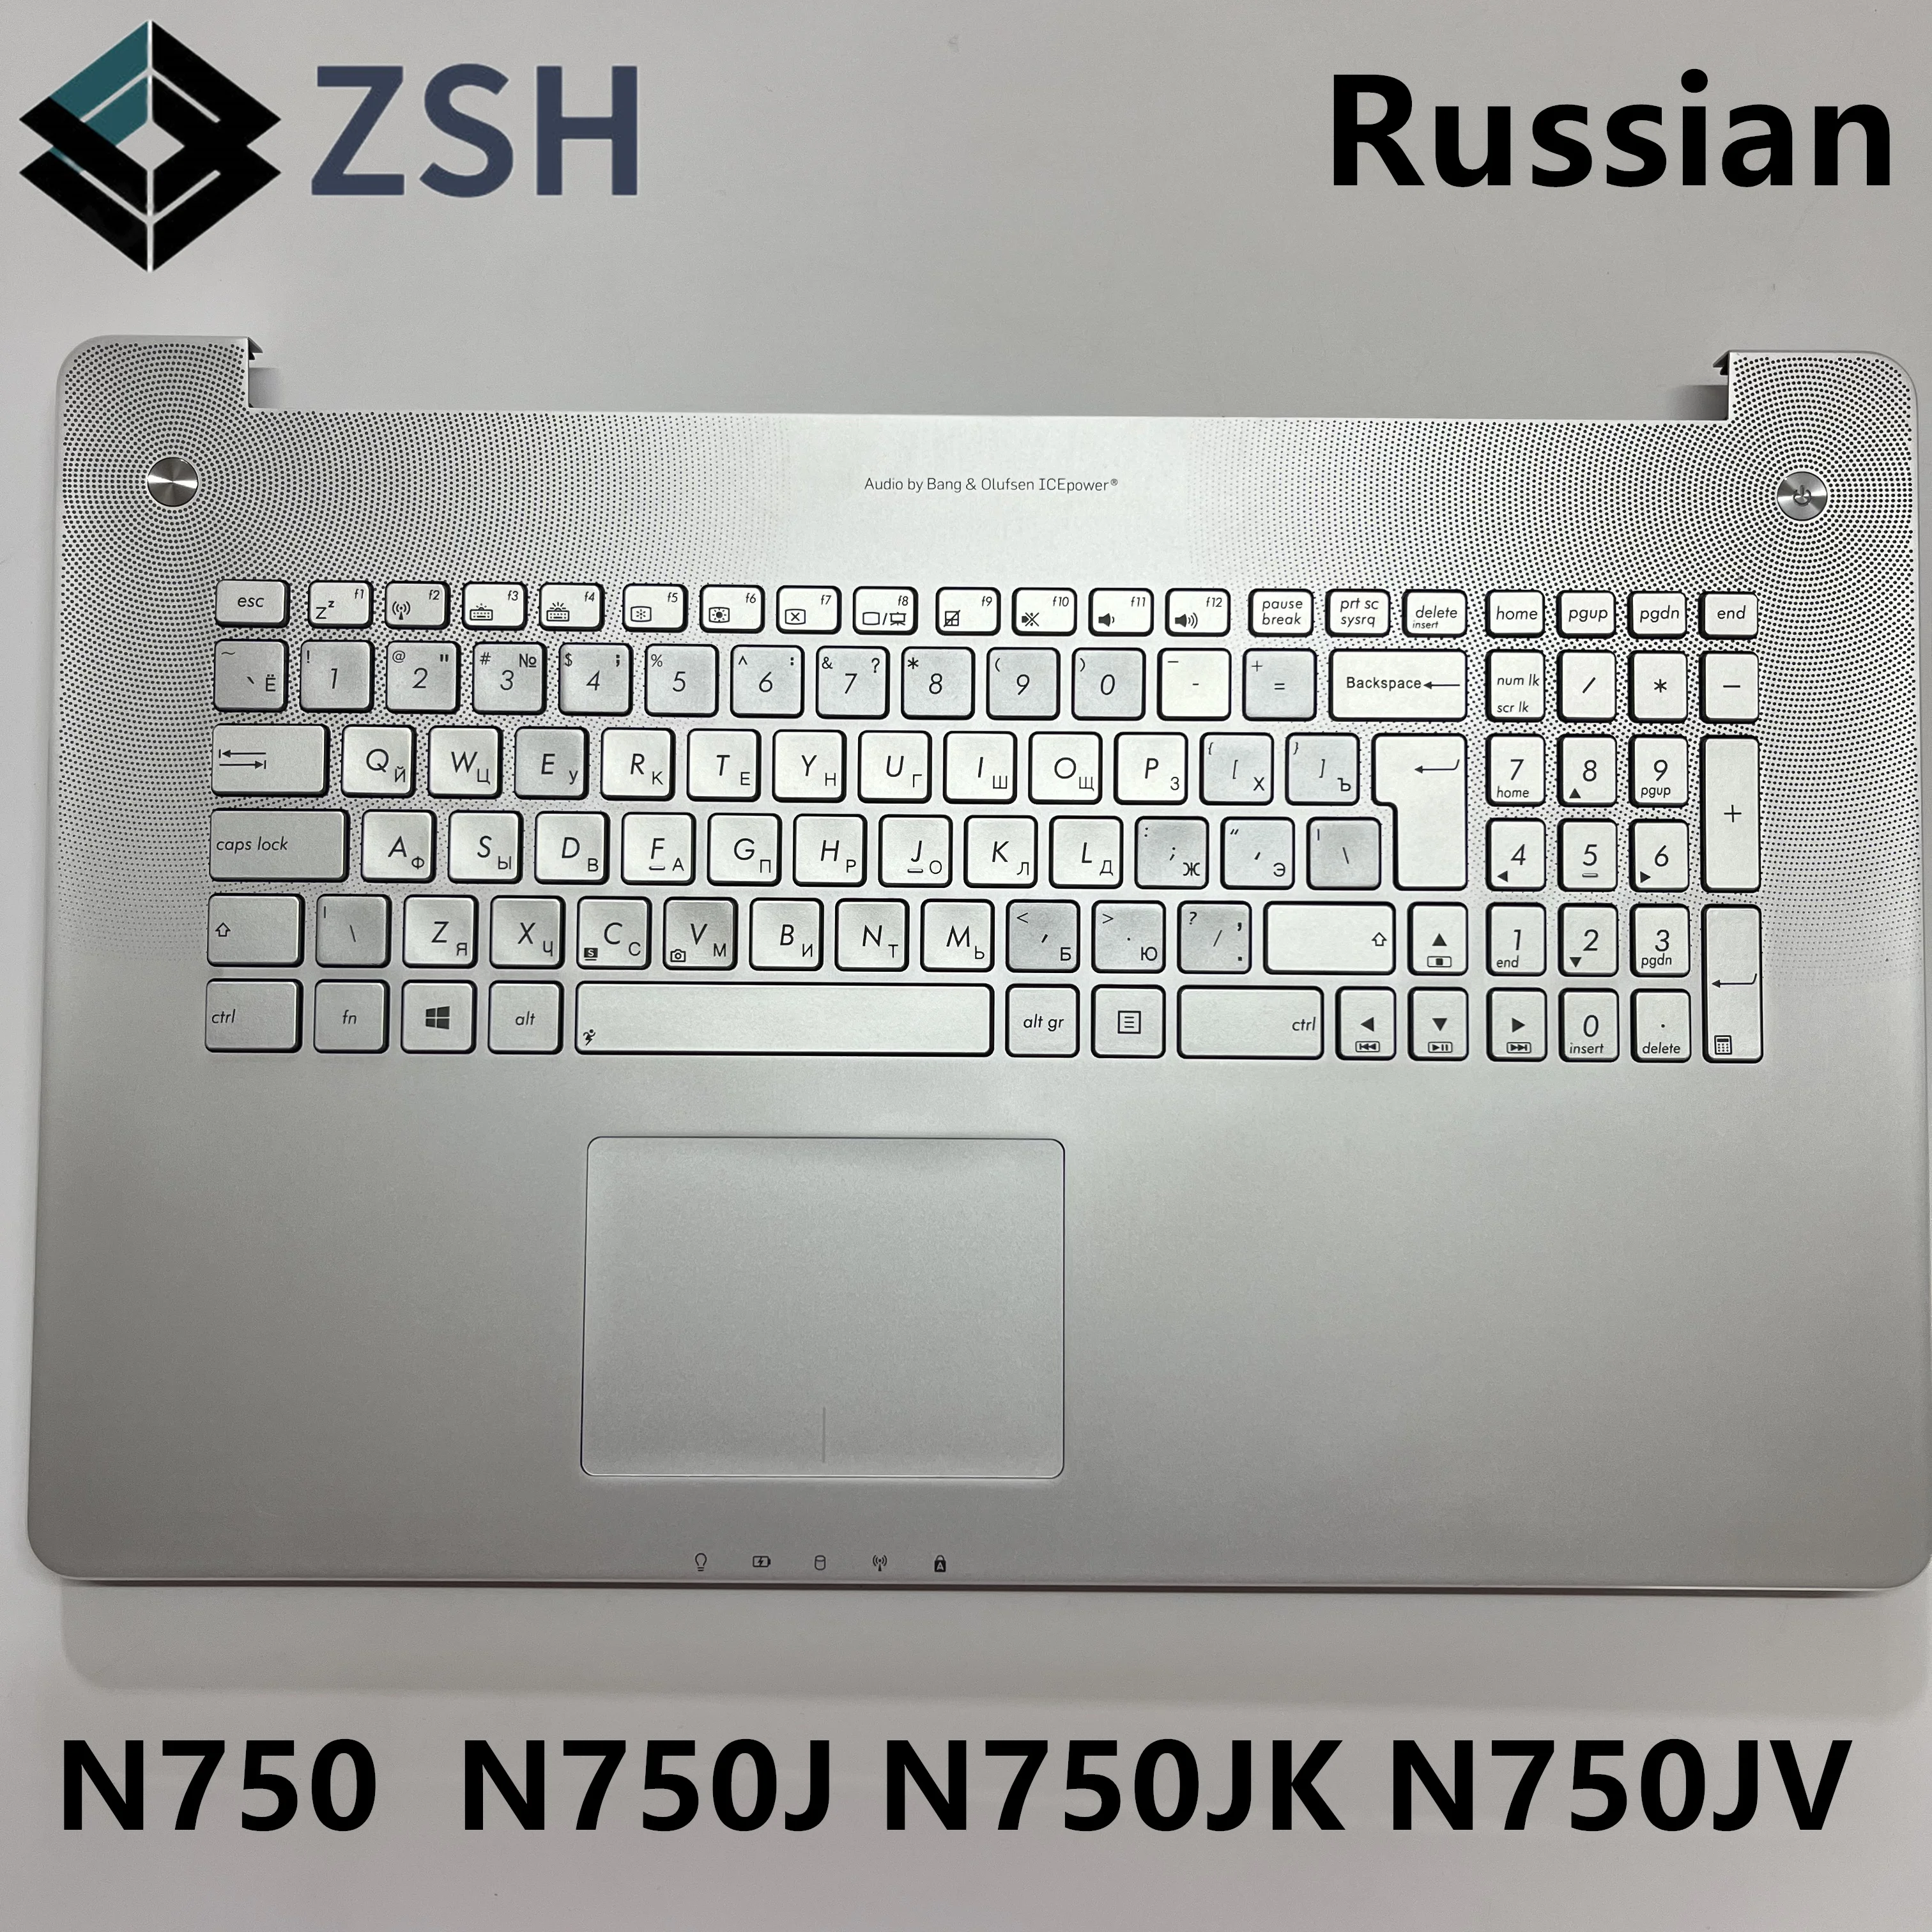 Новая Клавиатура для Ноутбука RU русского стандарта с подставкой для рук ASUS N750 N750J N750JK N750JV с Подсветкой Клавиатуры Ноутбука Slivery C Крышкой